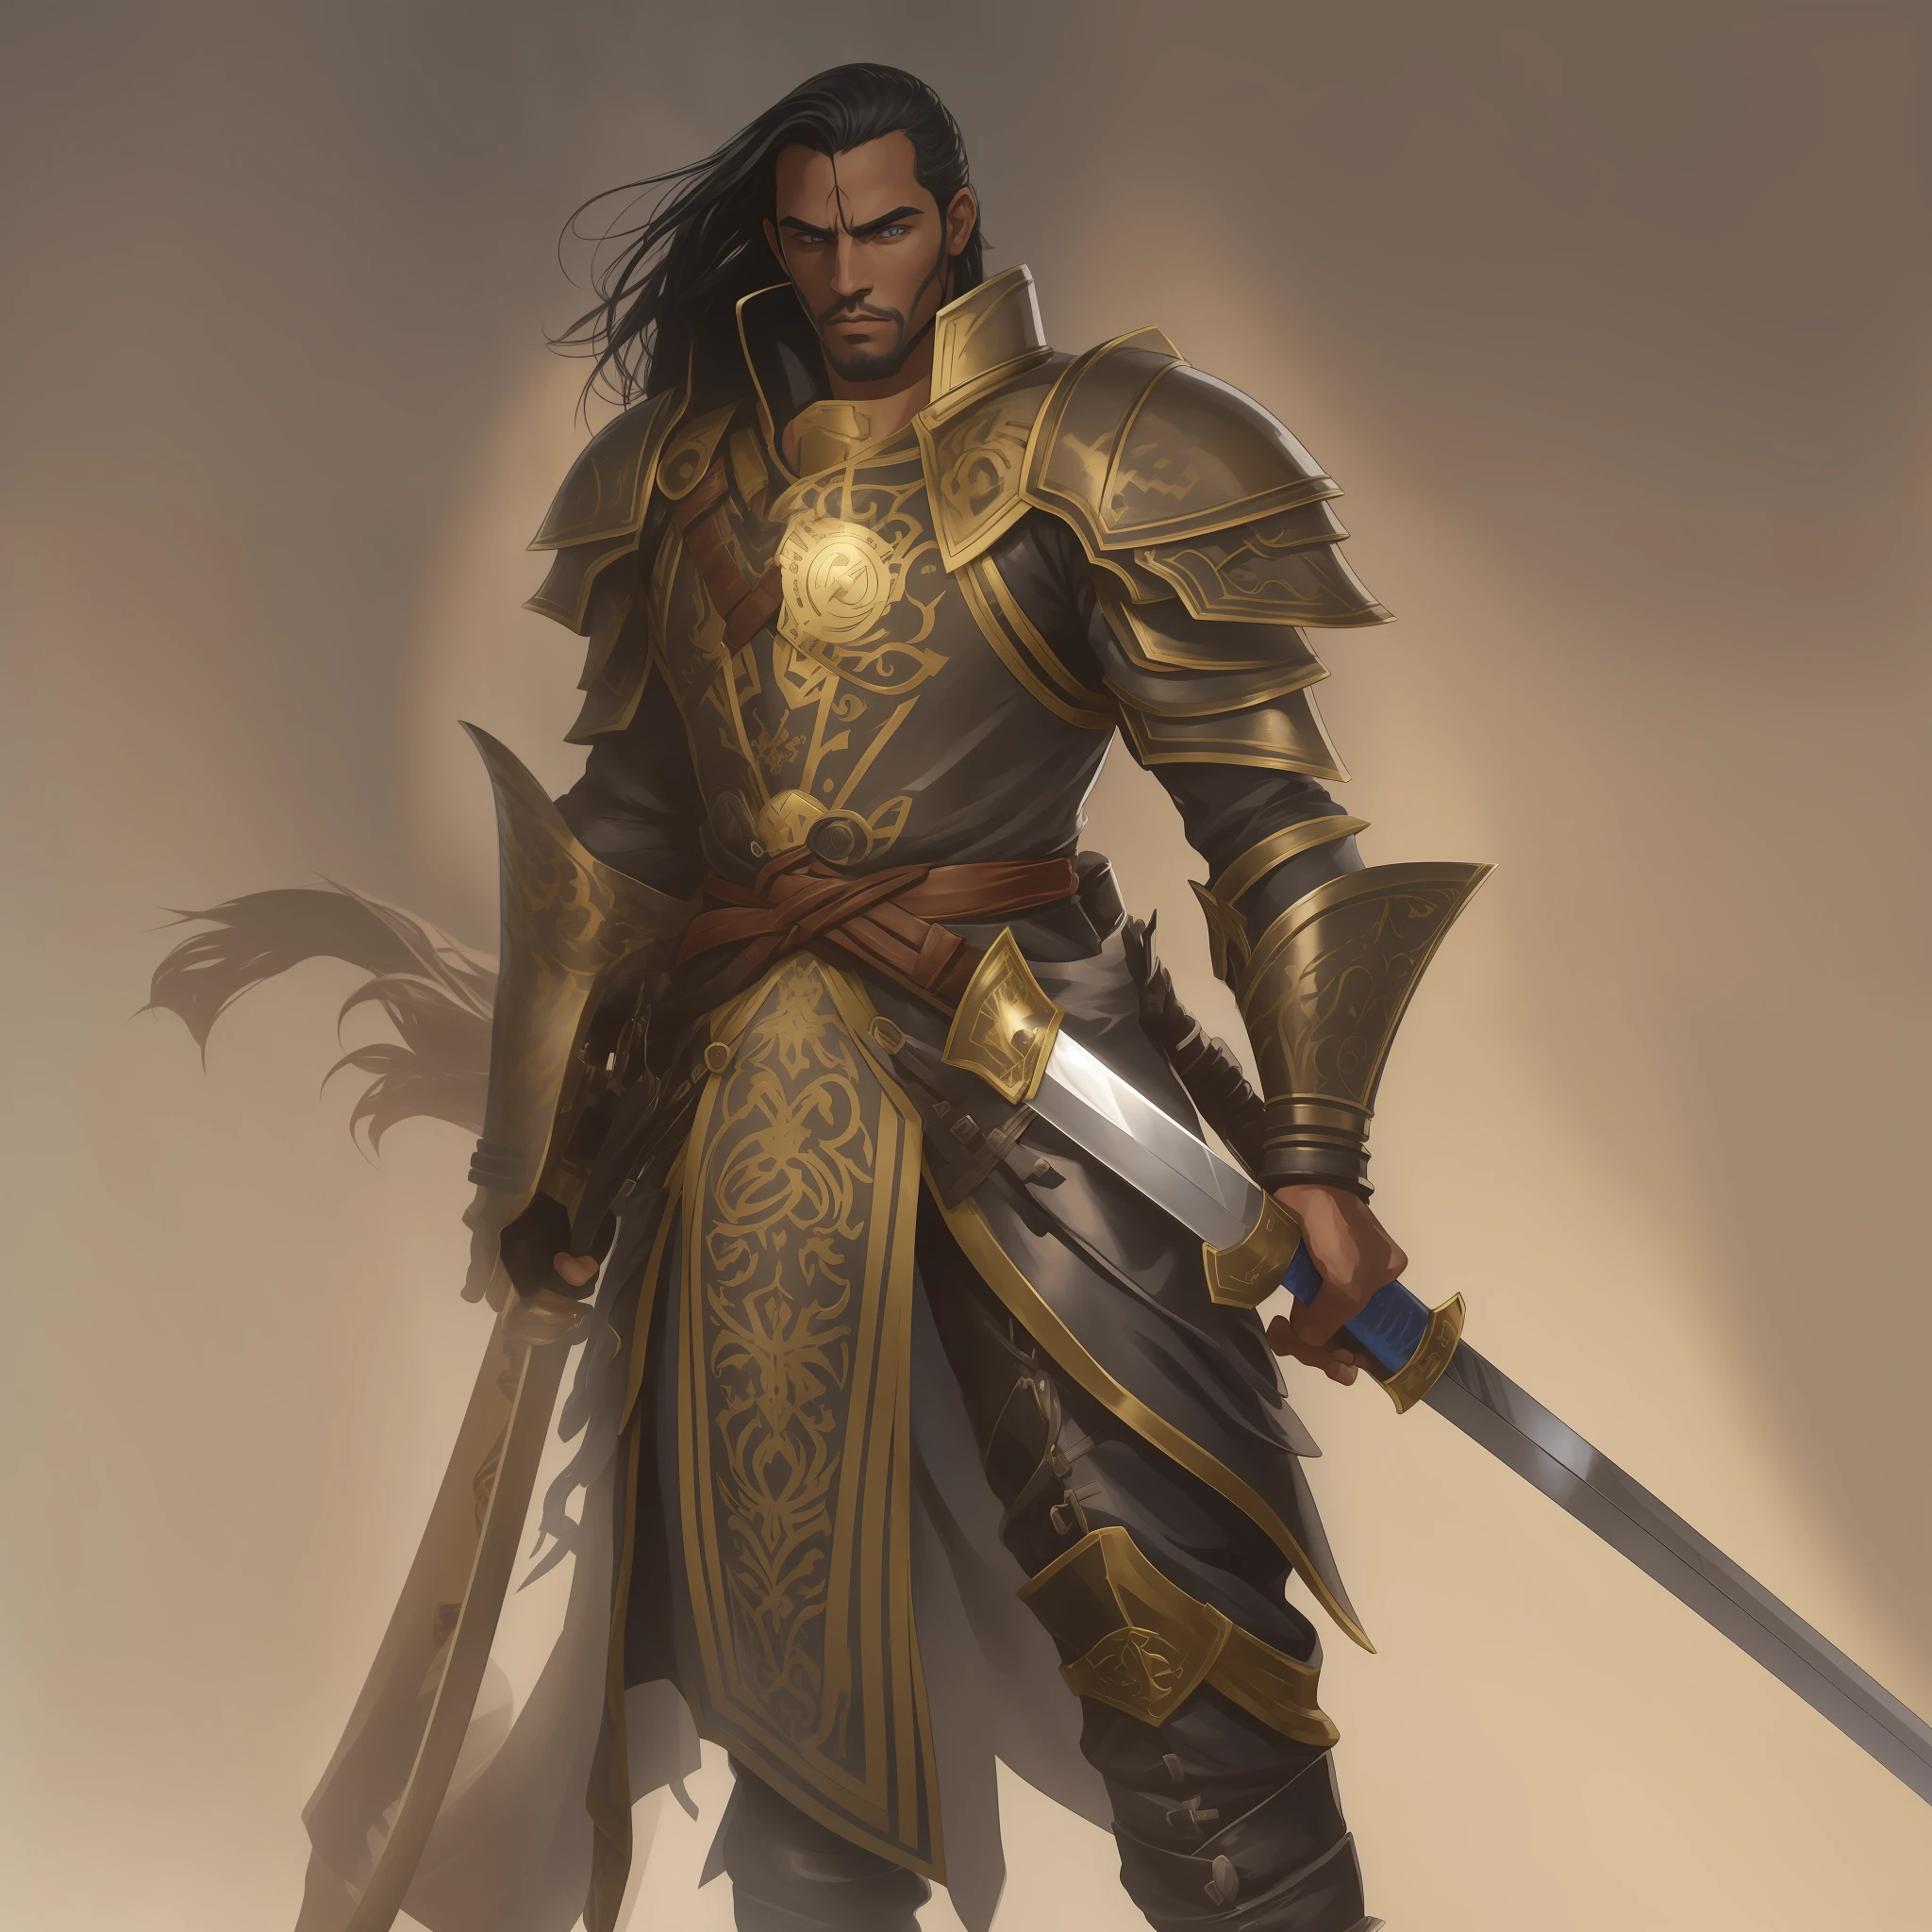 特点, 一个穿着闪闪发光的战争盔甲的男人, 手持双手长剑 , 人类男性圣骑士, 扶桑丽圣骑士图片, 男性骑士, 金色圣骑士